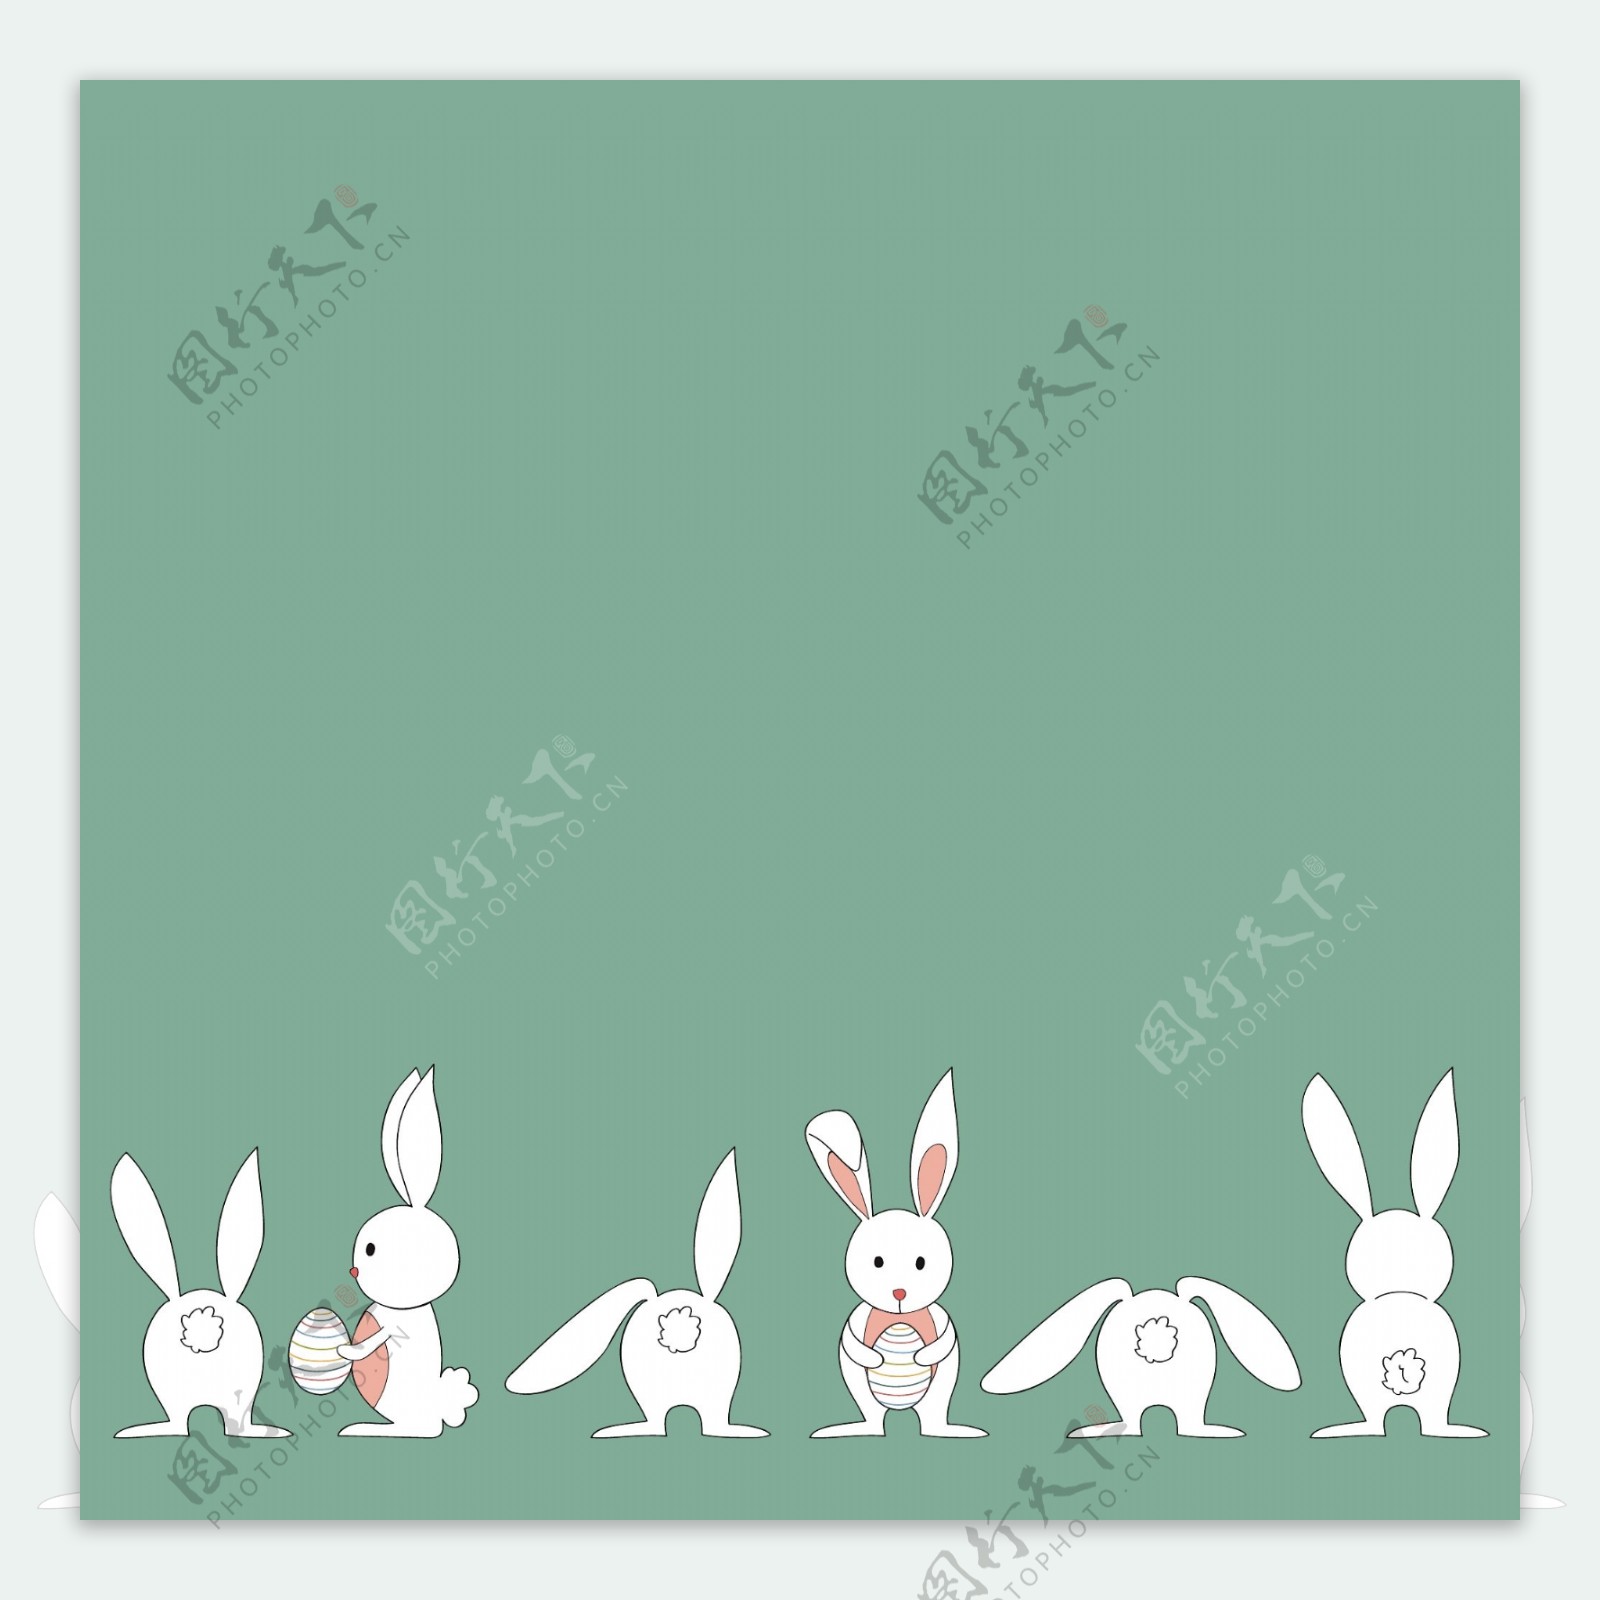 各种形态姿势的兔子矢量素材